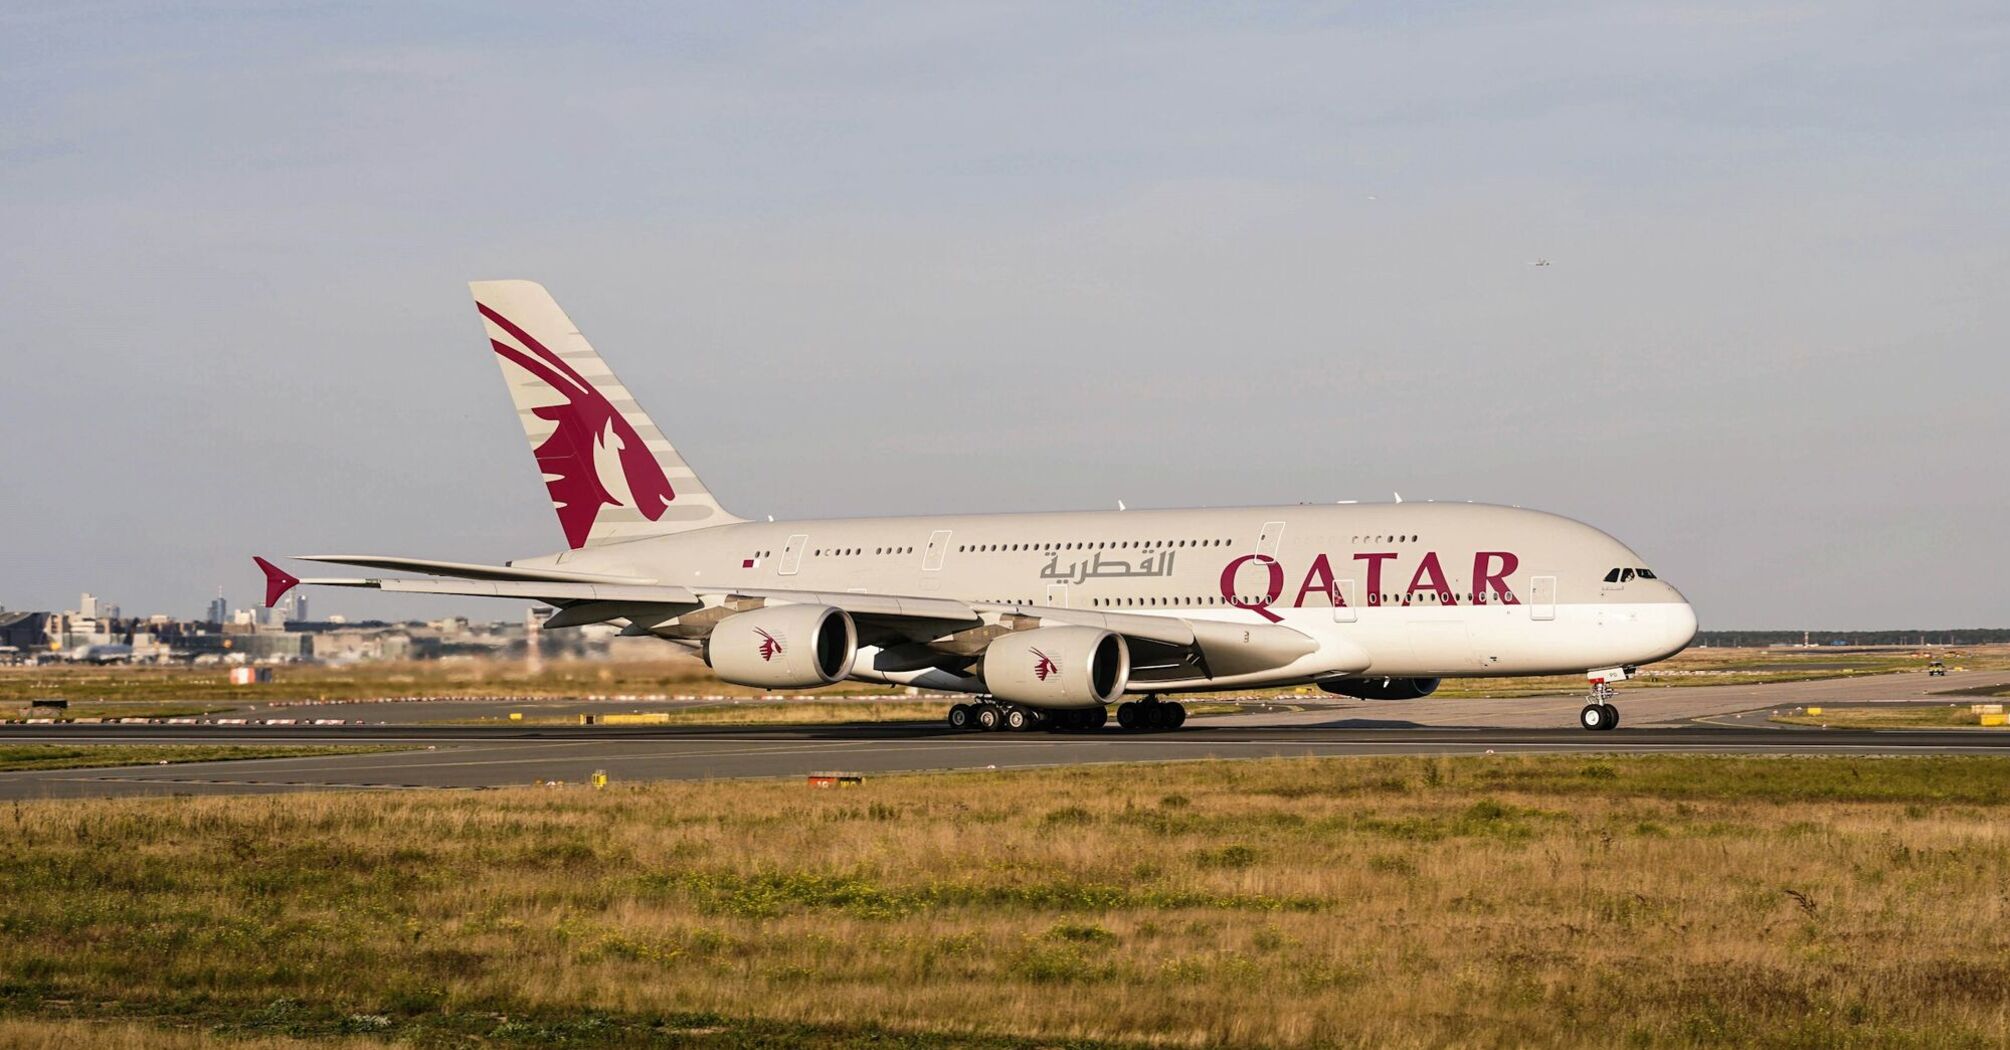 Qatar Airways plane on the runway